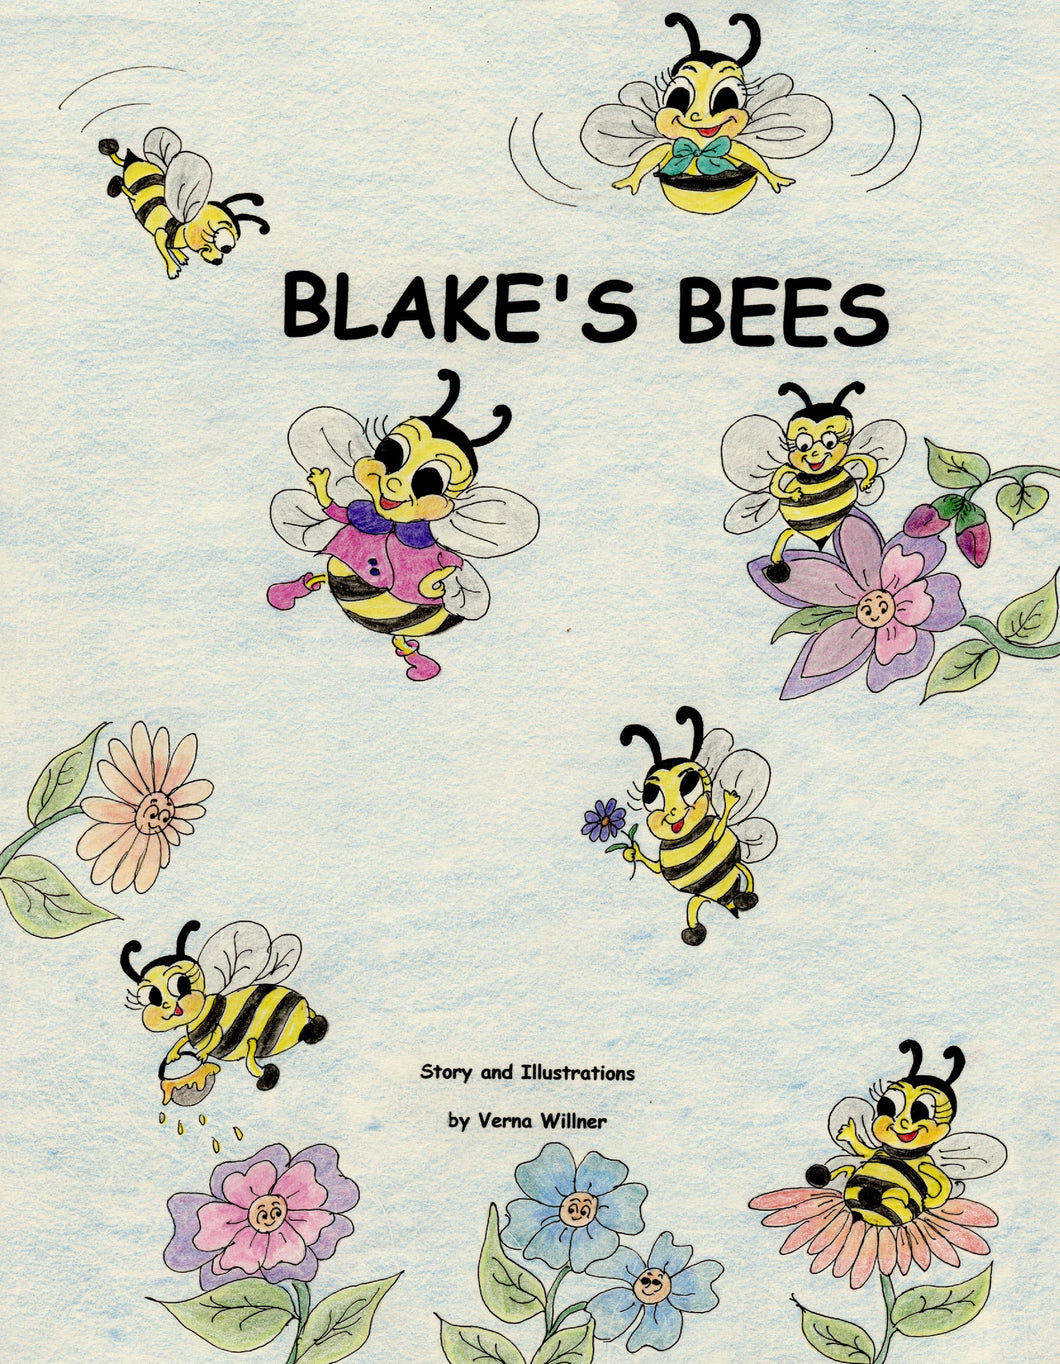 Blake's Bees